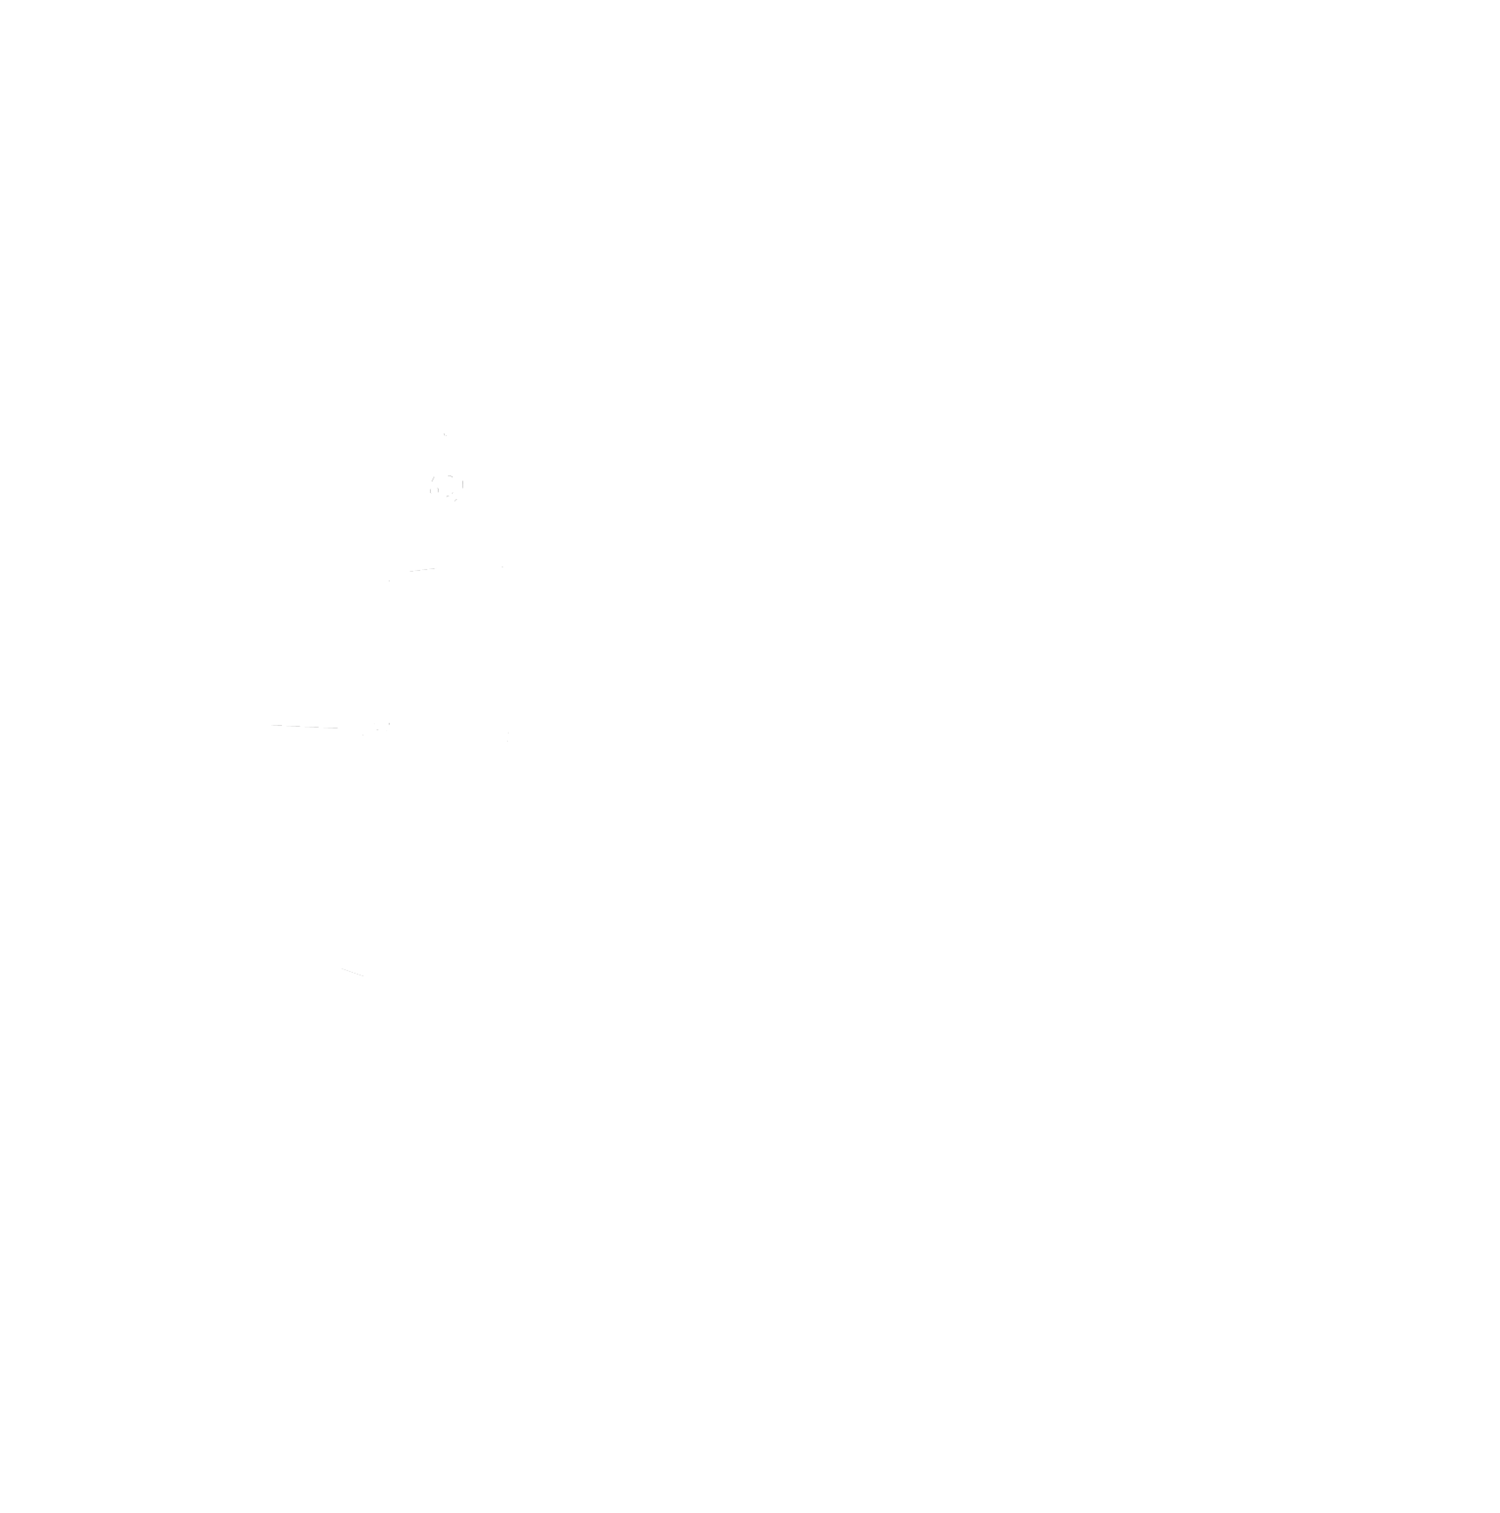 The Scotland Yard Soundsystem